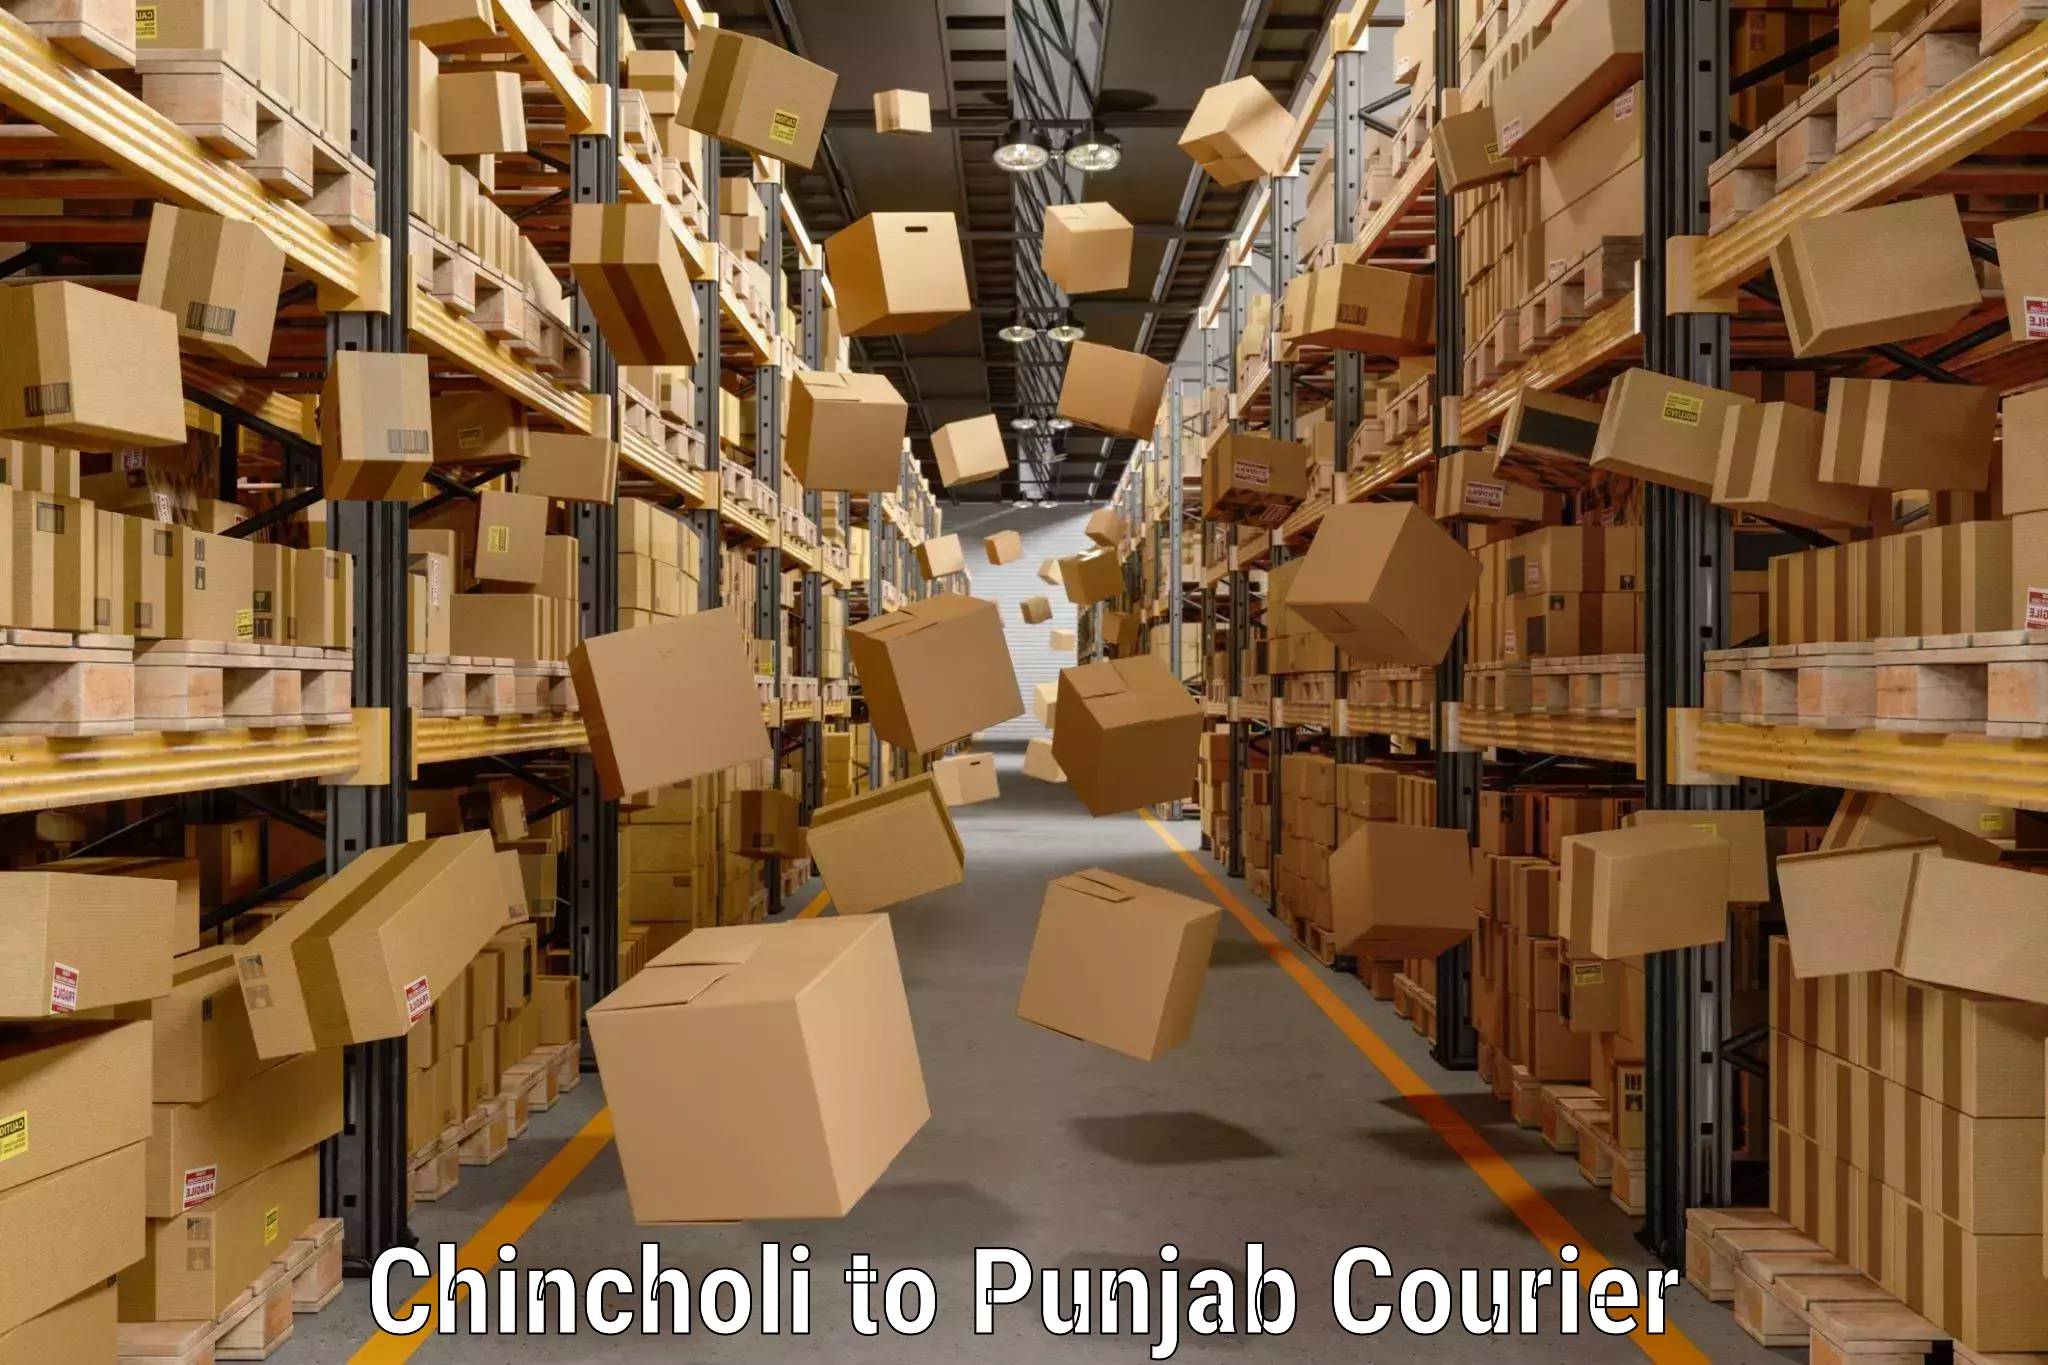 Baggage transport management Chincholi to Punjab